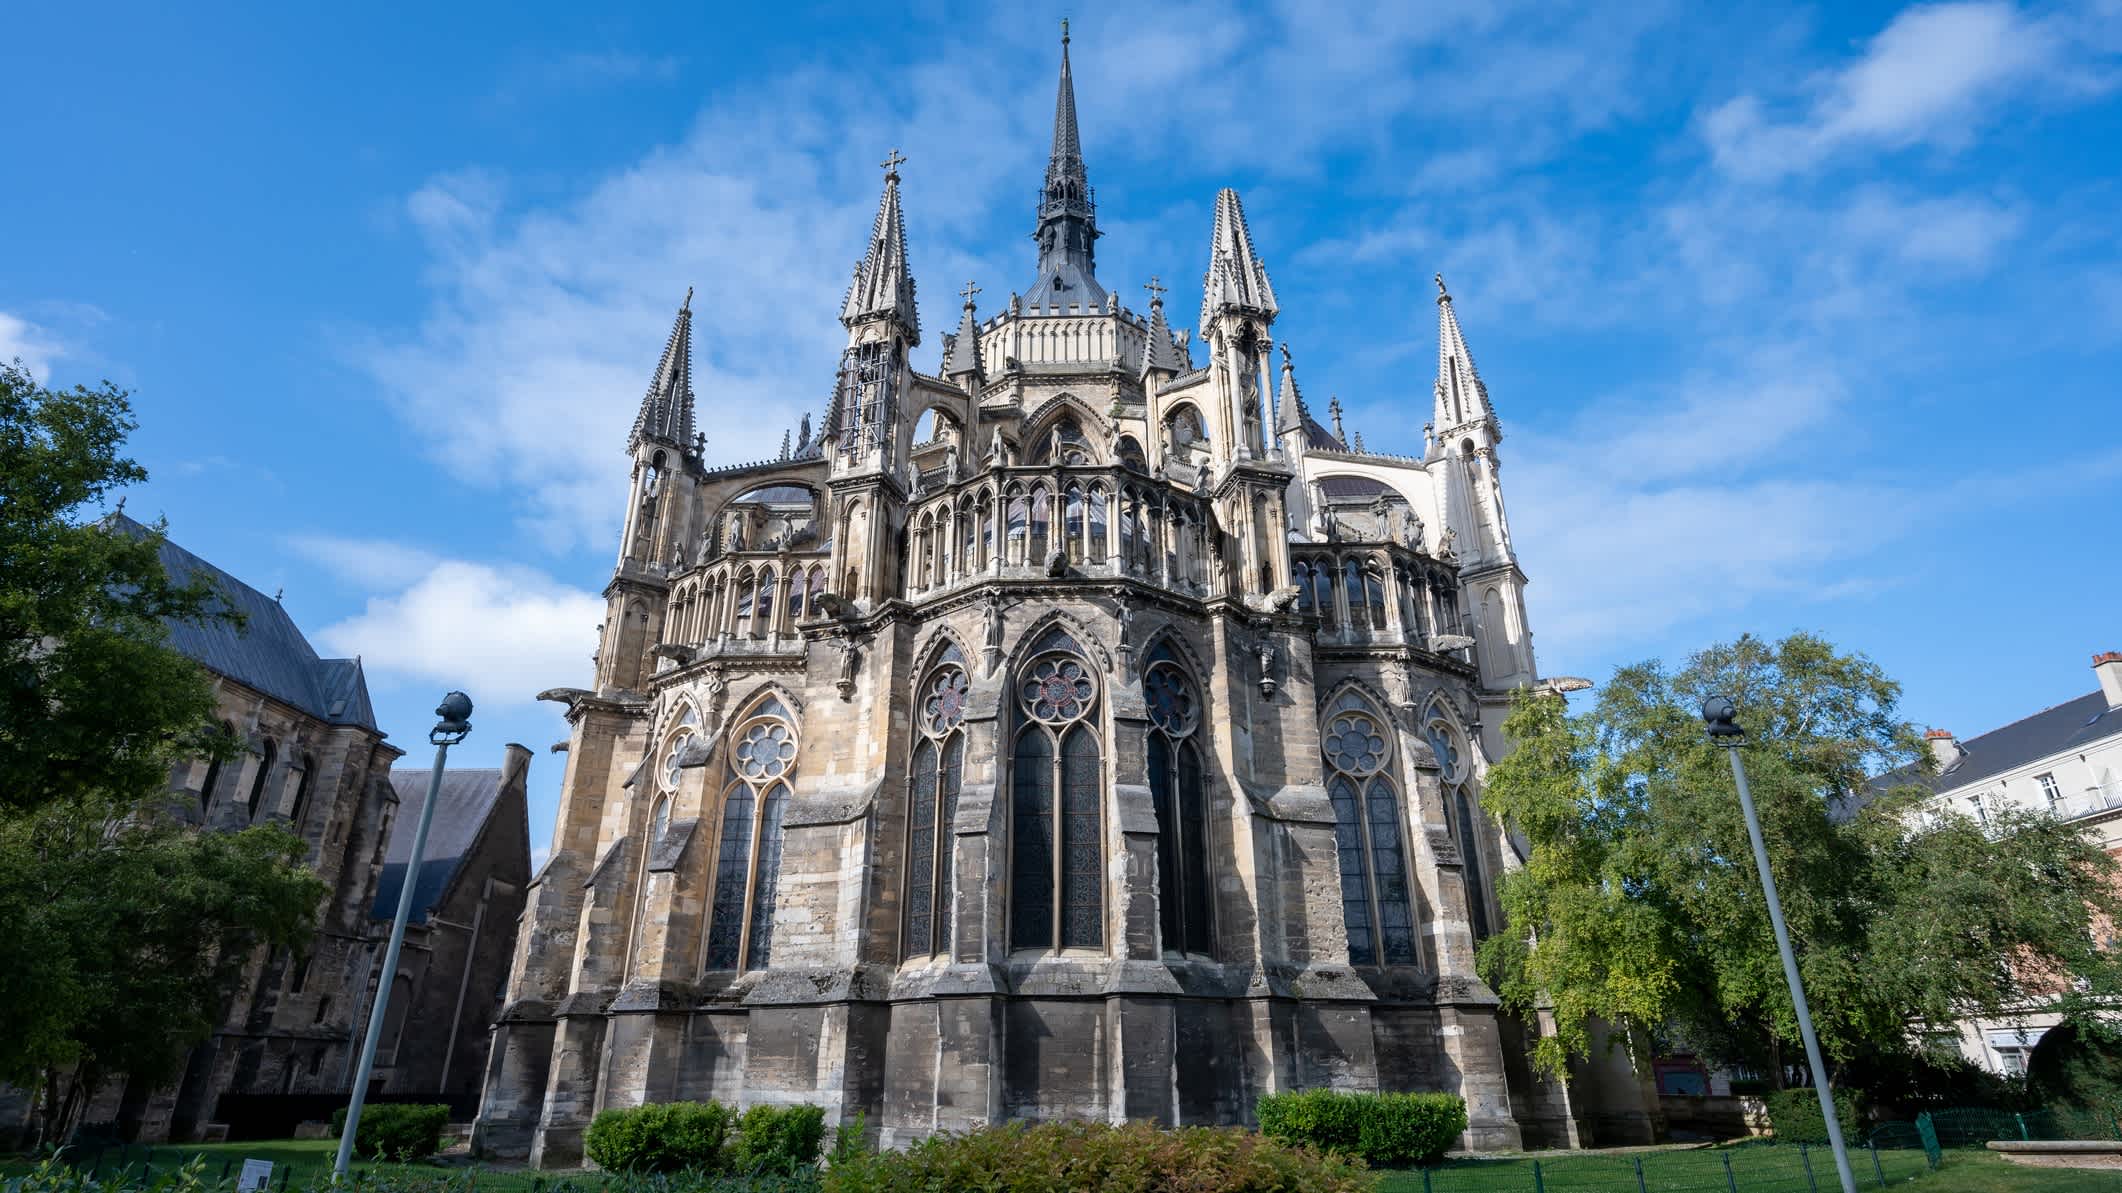  Gotische römisch-katholische Kathedrale Notre-Dame in der Stadt Reims